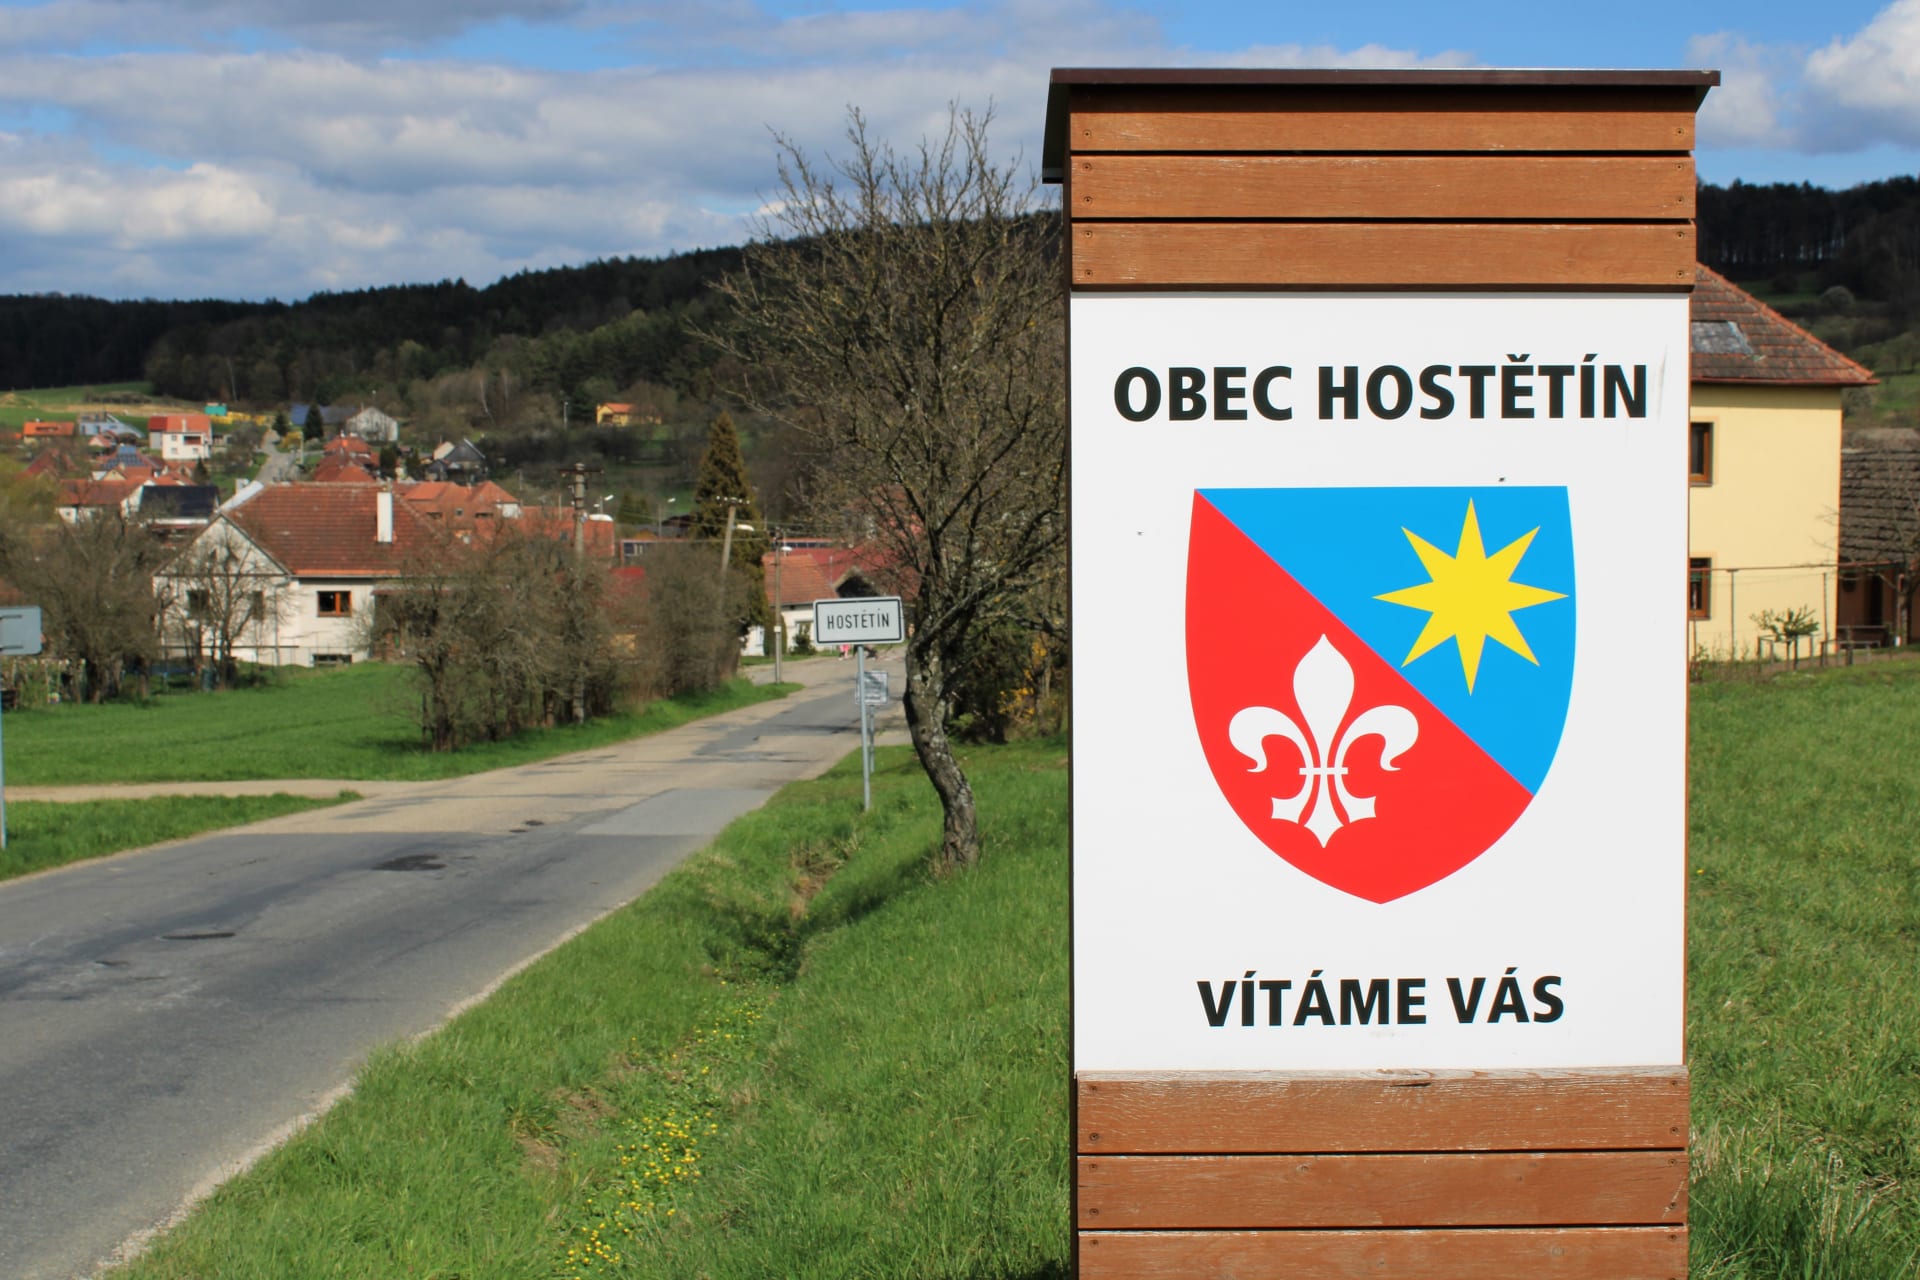 Hostětín na Moravě, který zažil návštěvu prince Charlese. Obec leží na doteku se slovenskými hranicemi.